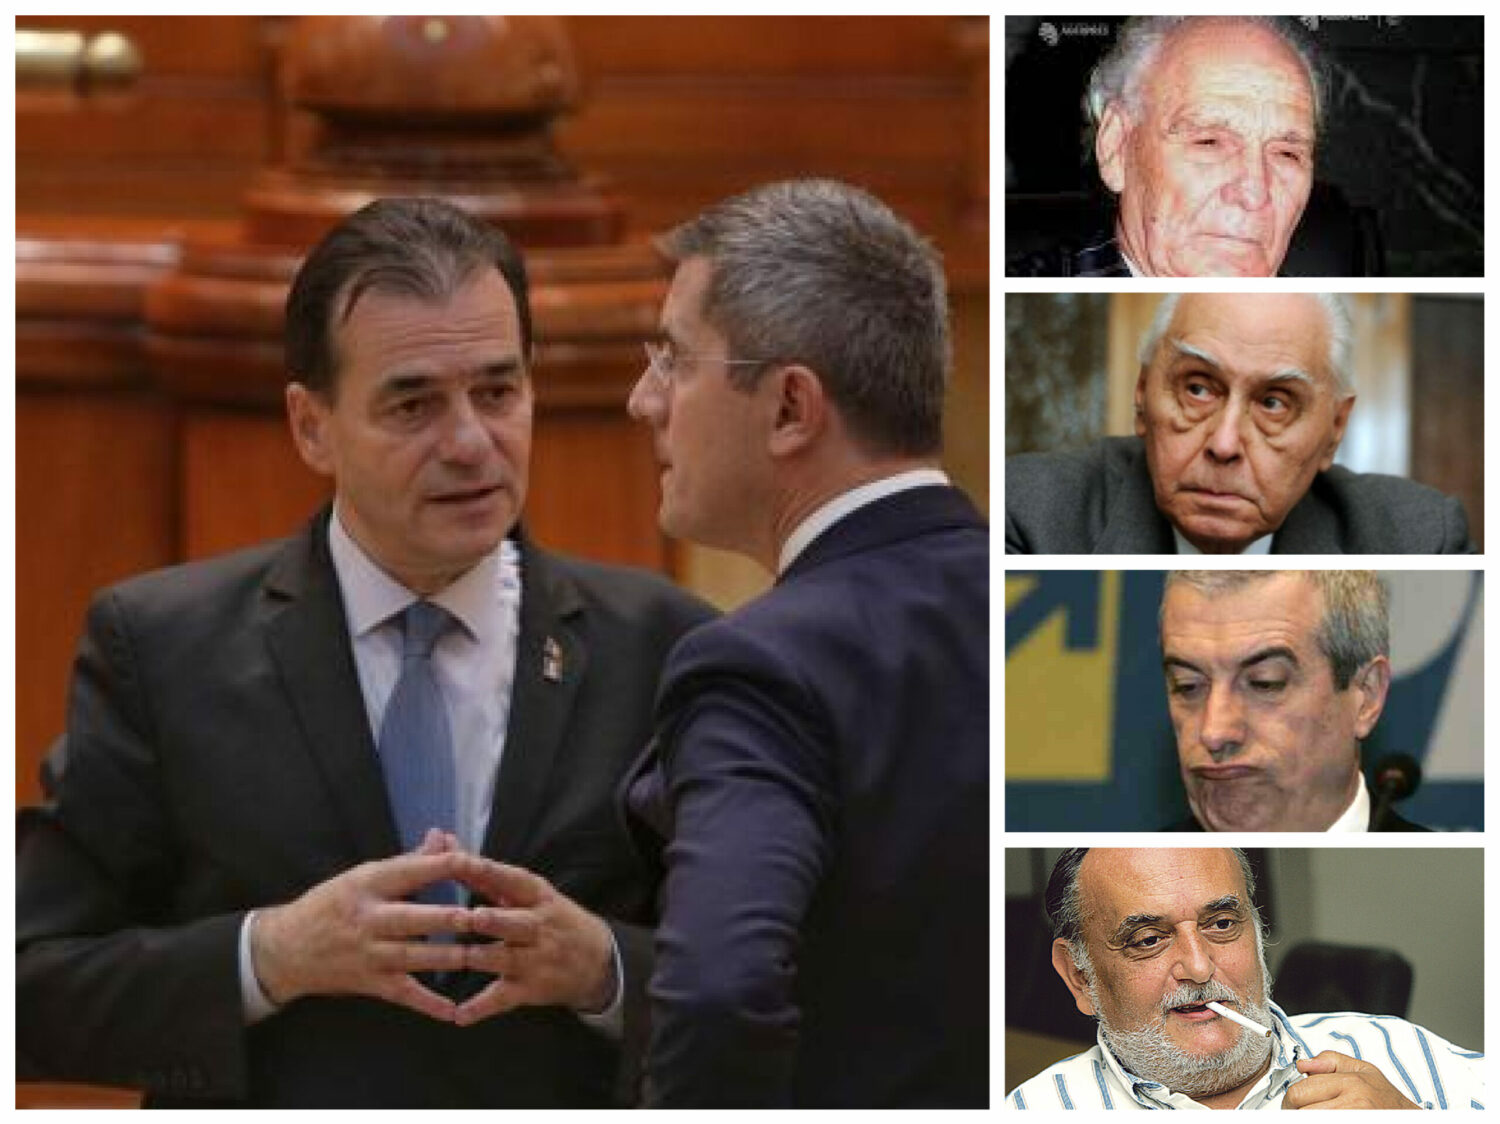 După Câmpeanu, Patriciu, Cerveni și Tăriceanu, încearcă acum și Orban să rupă o ”așchie” din PNL